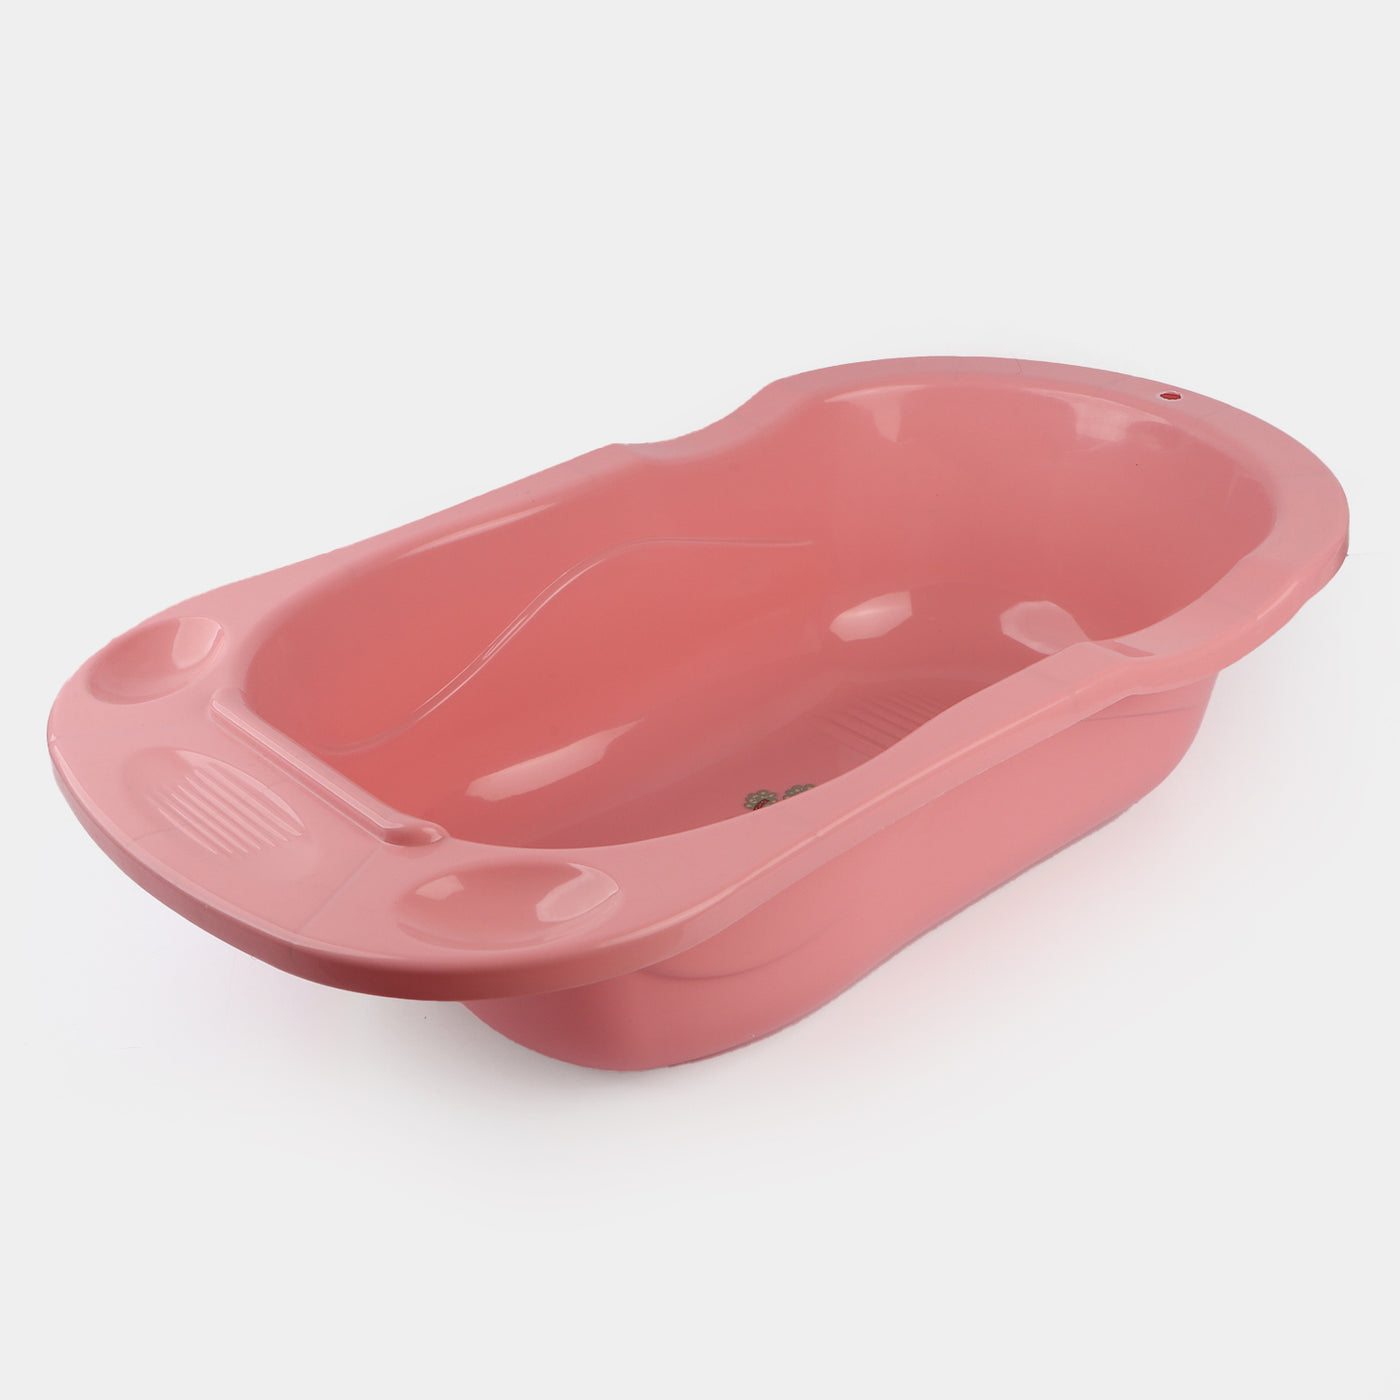 Baby Bath Tub - Pink